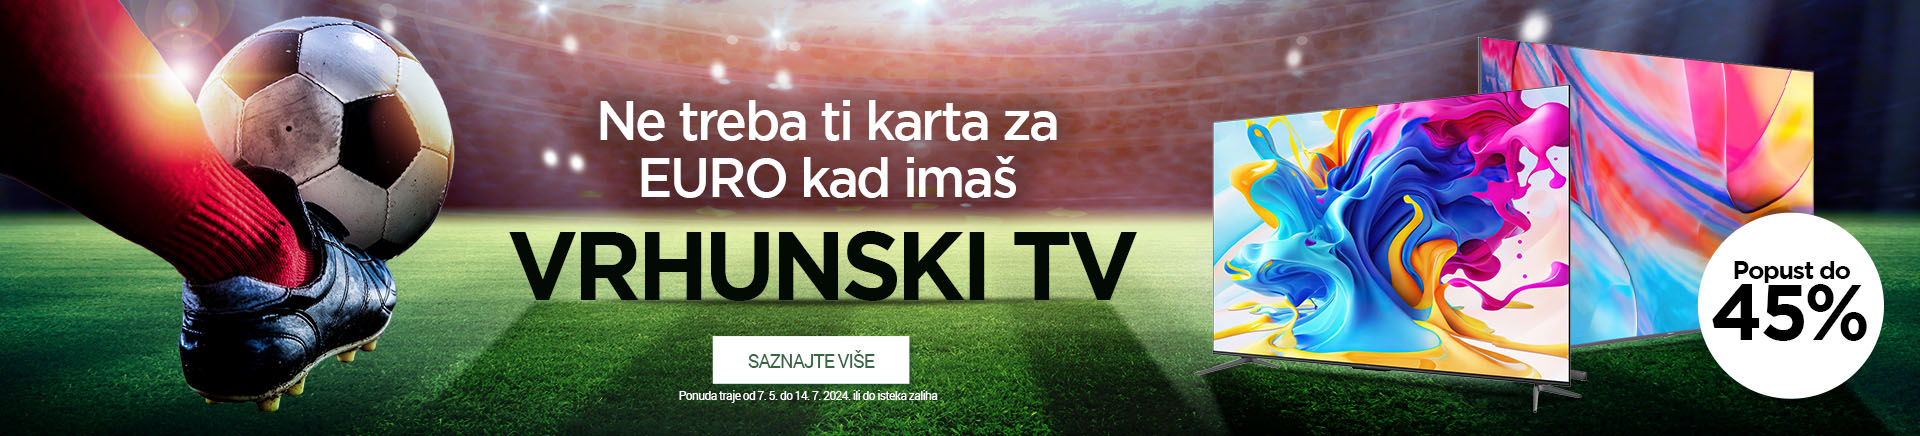 CG teaser TV kampanja EURO banner slider MOBILE za APP 760x872.jpg